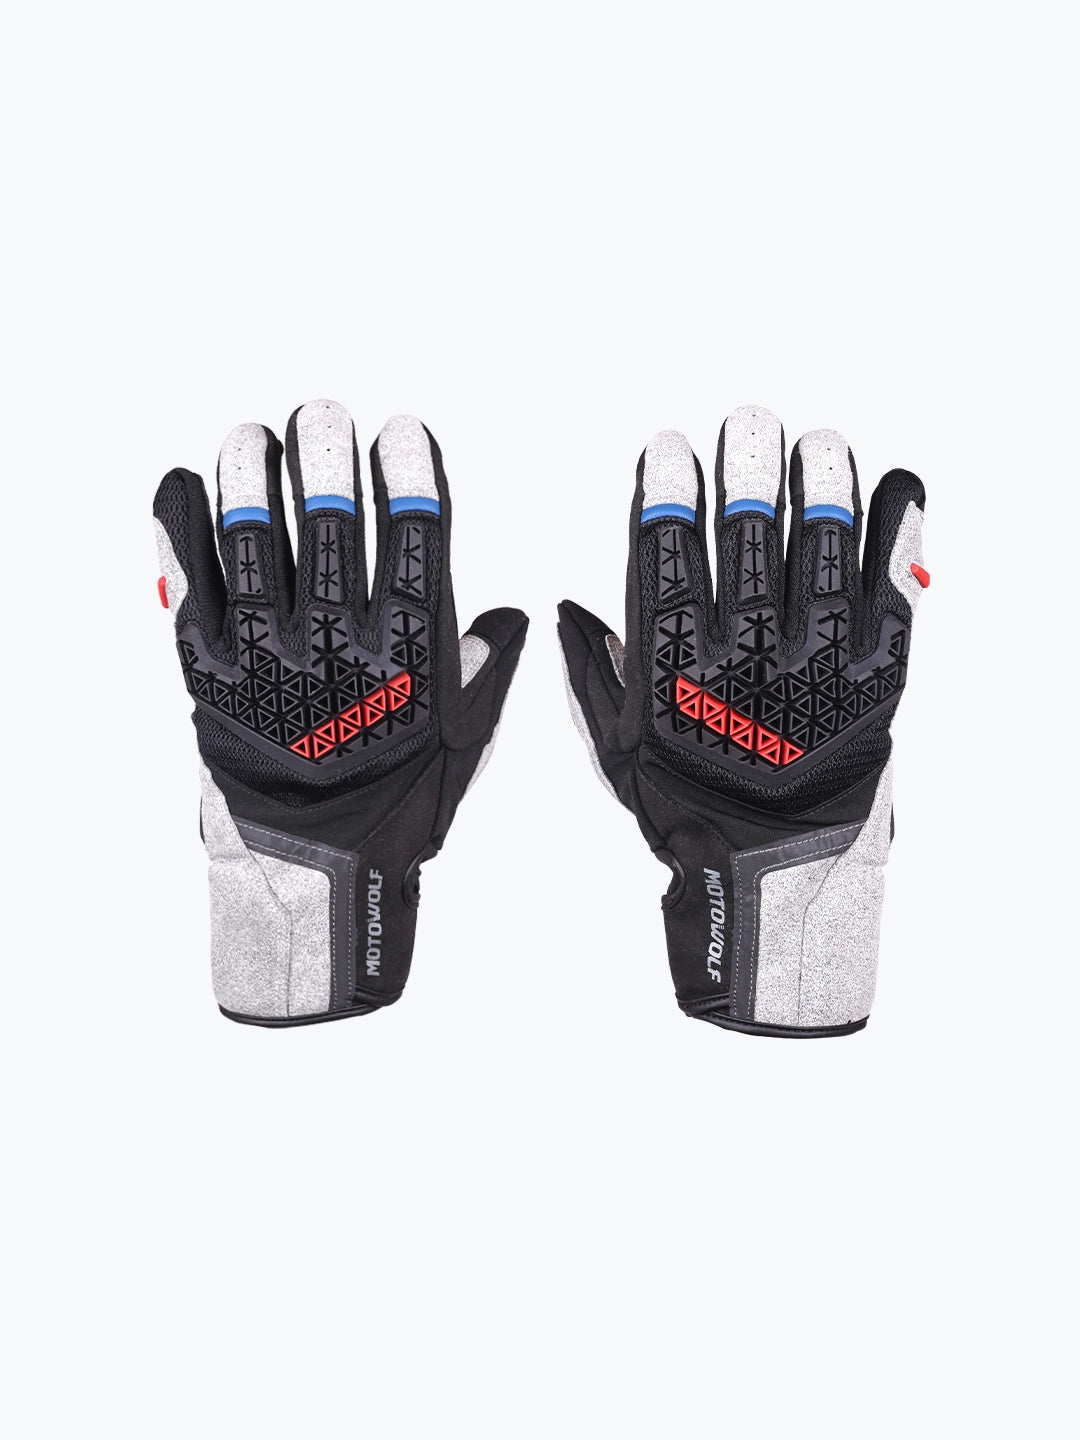 Motowolf Gloves Grey 0338